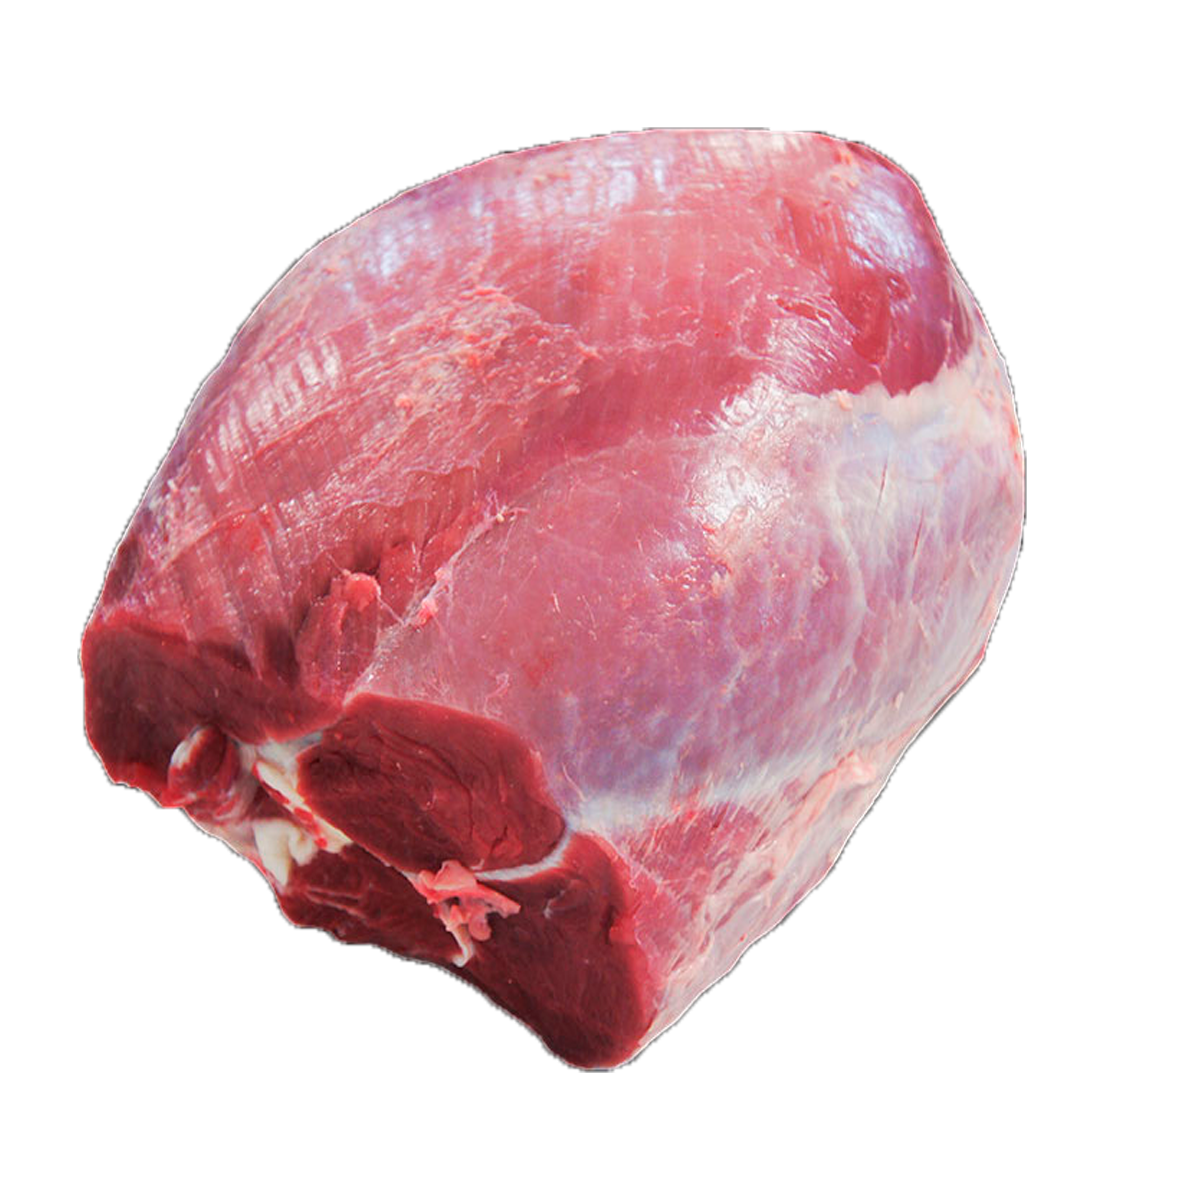 La carne diezmillo: el corte de carne favorito en Estados Unidos